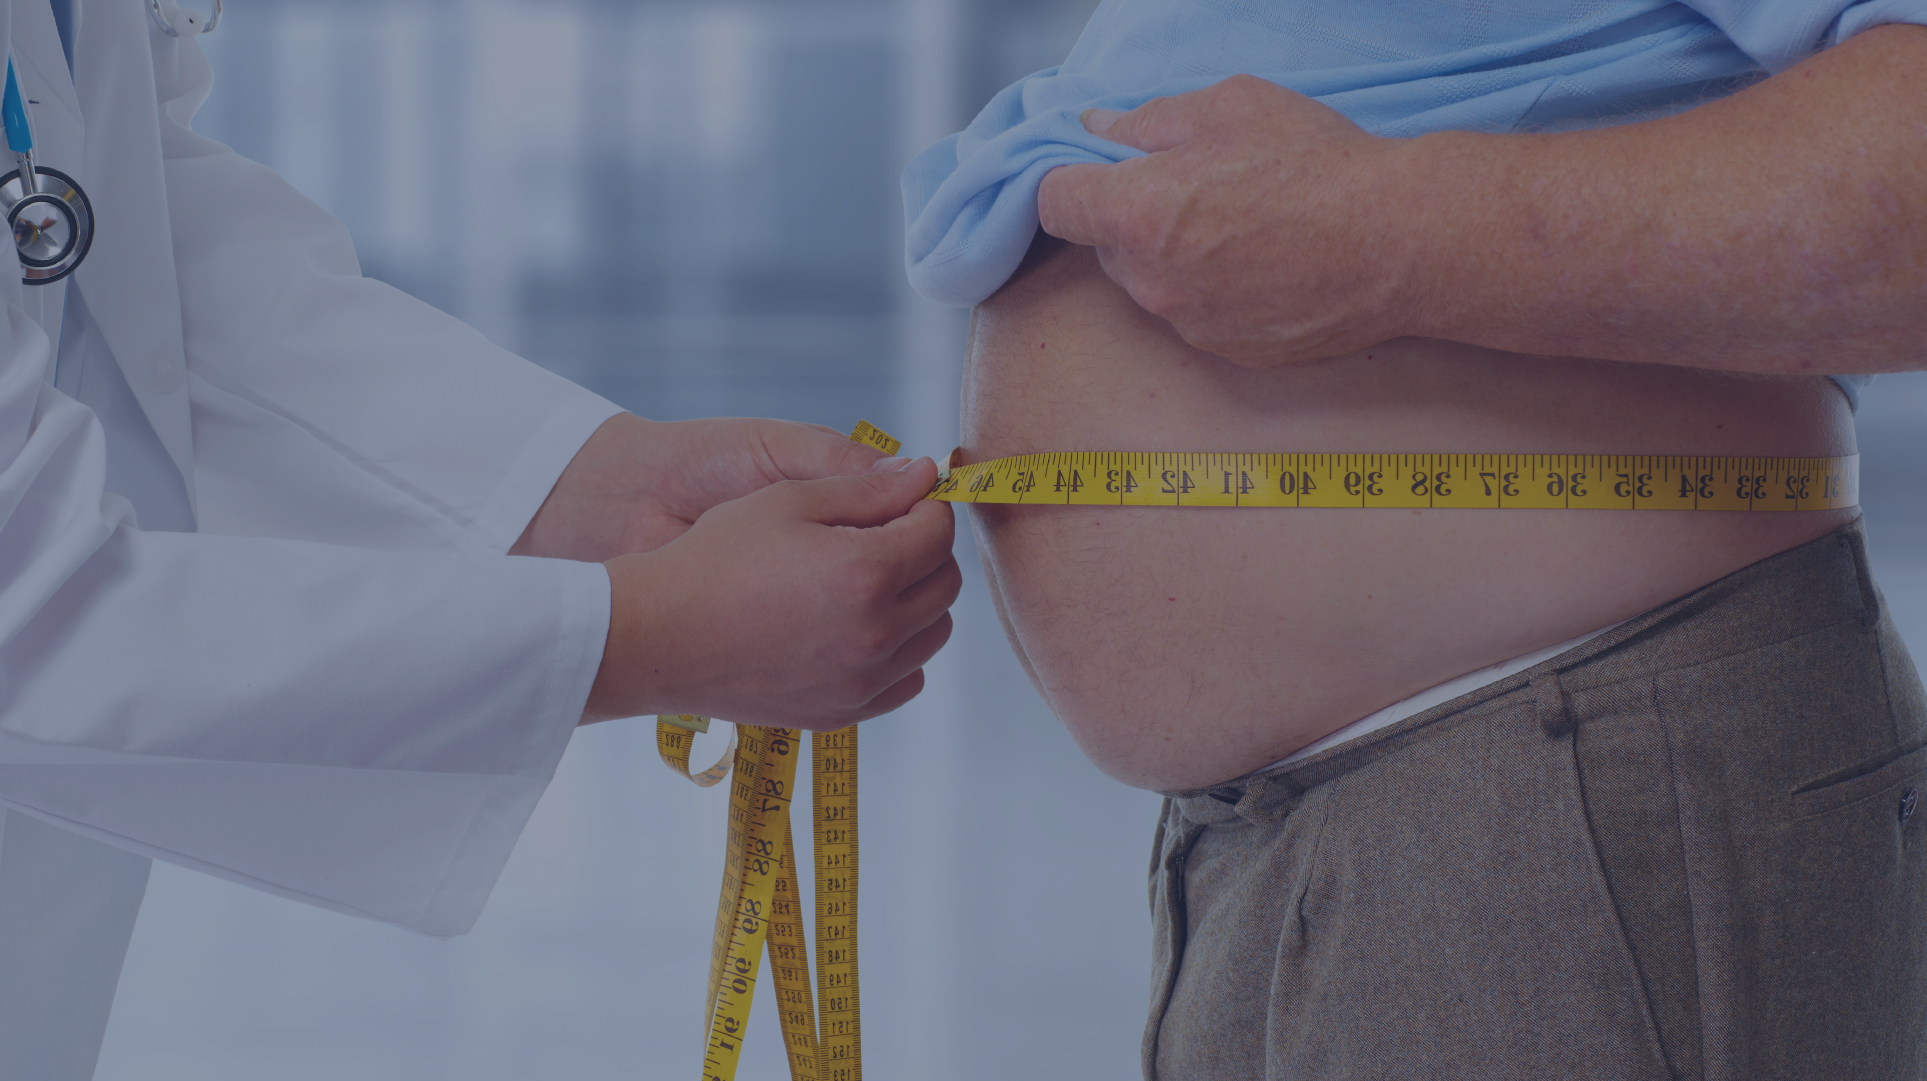 Феномен (парадокс) ожирения у пациентов с колоректальным раком